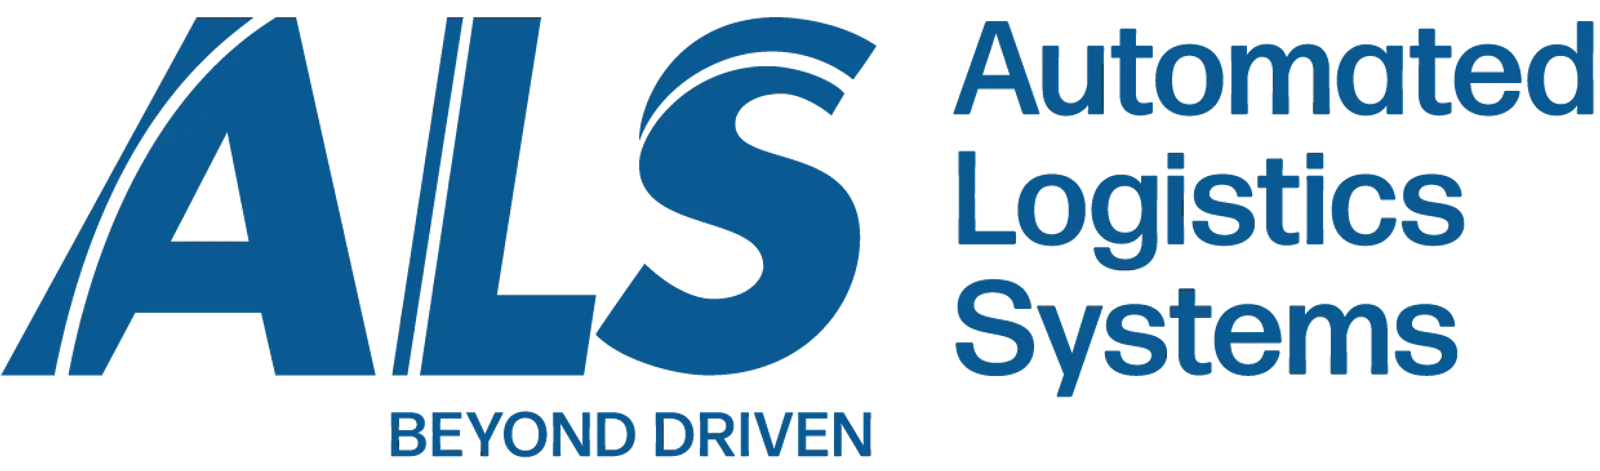 ALS Beyond Driven logo